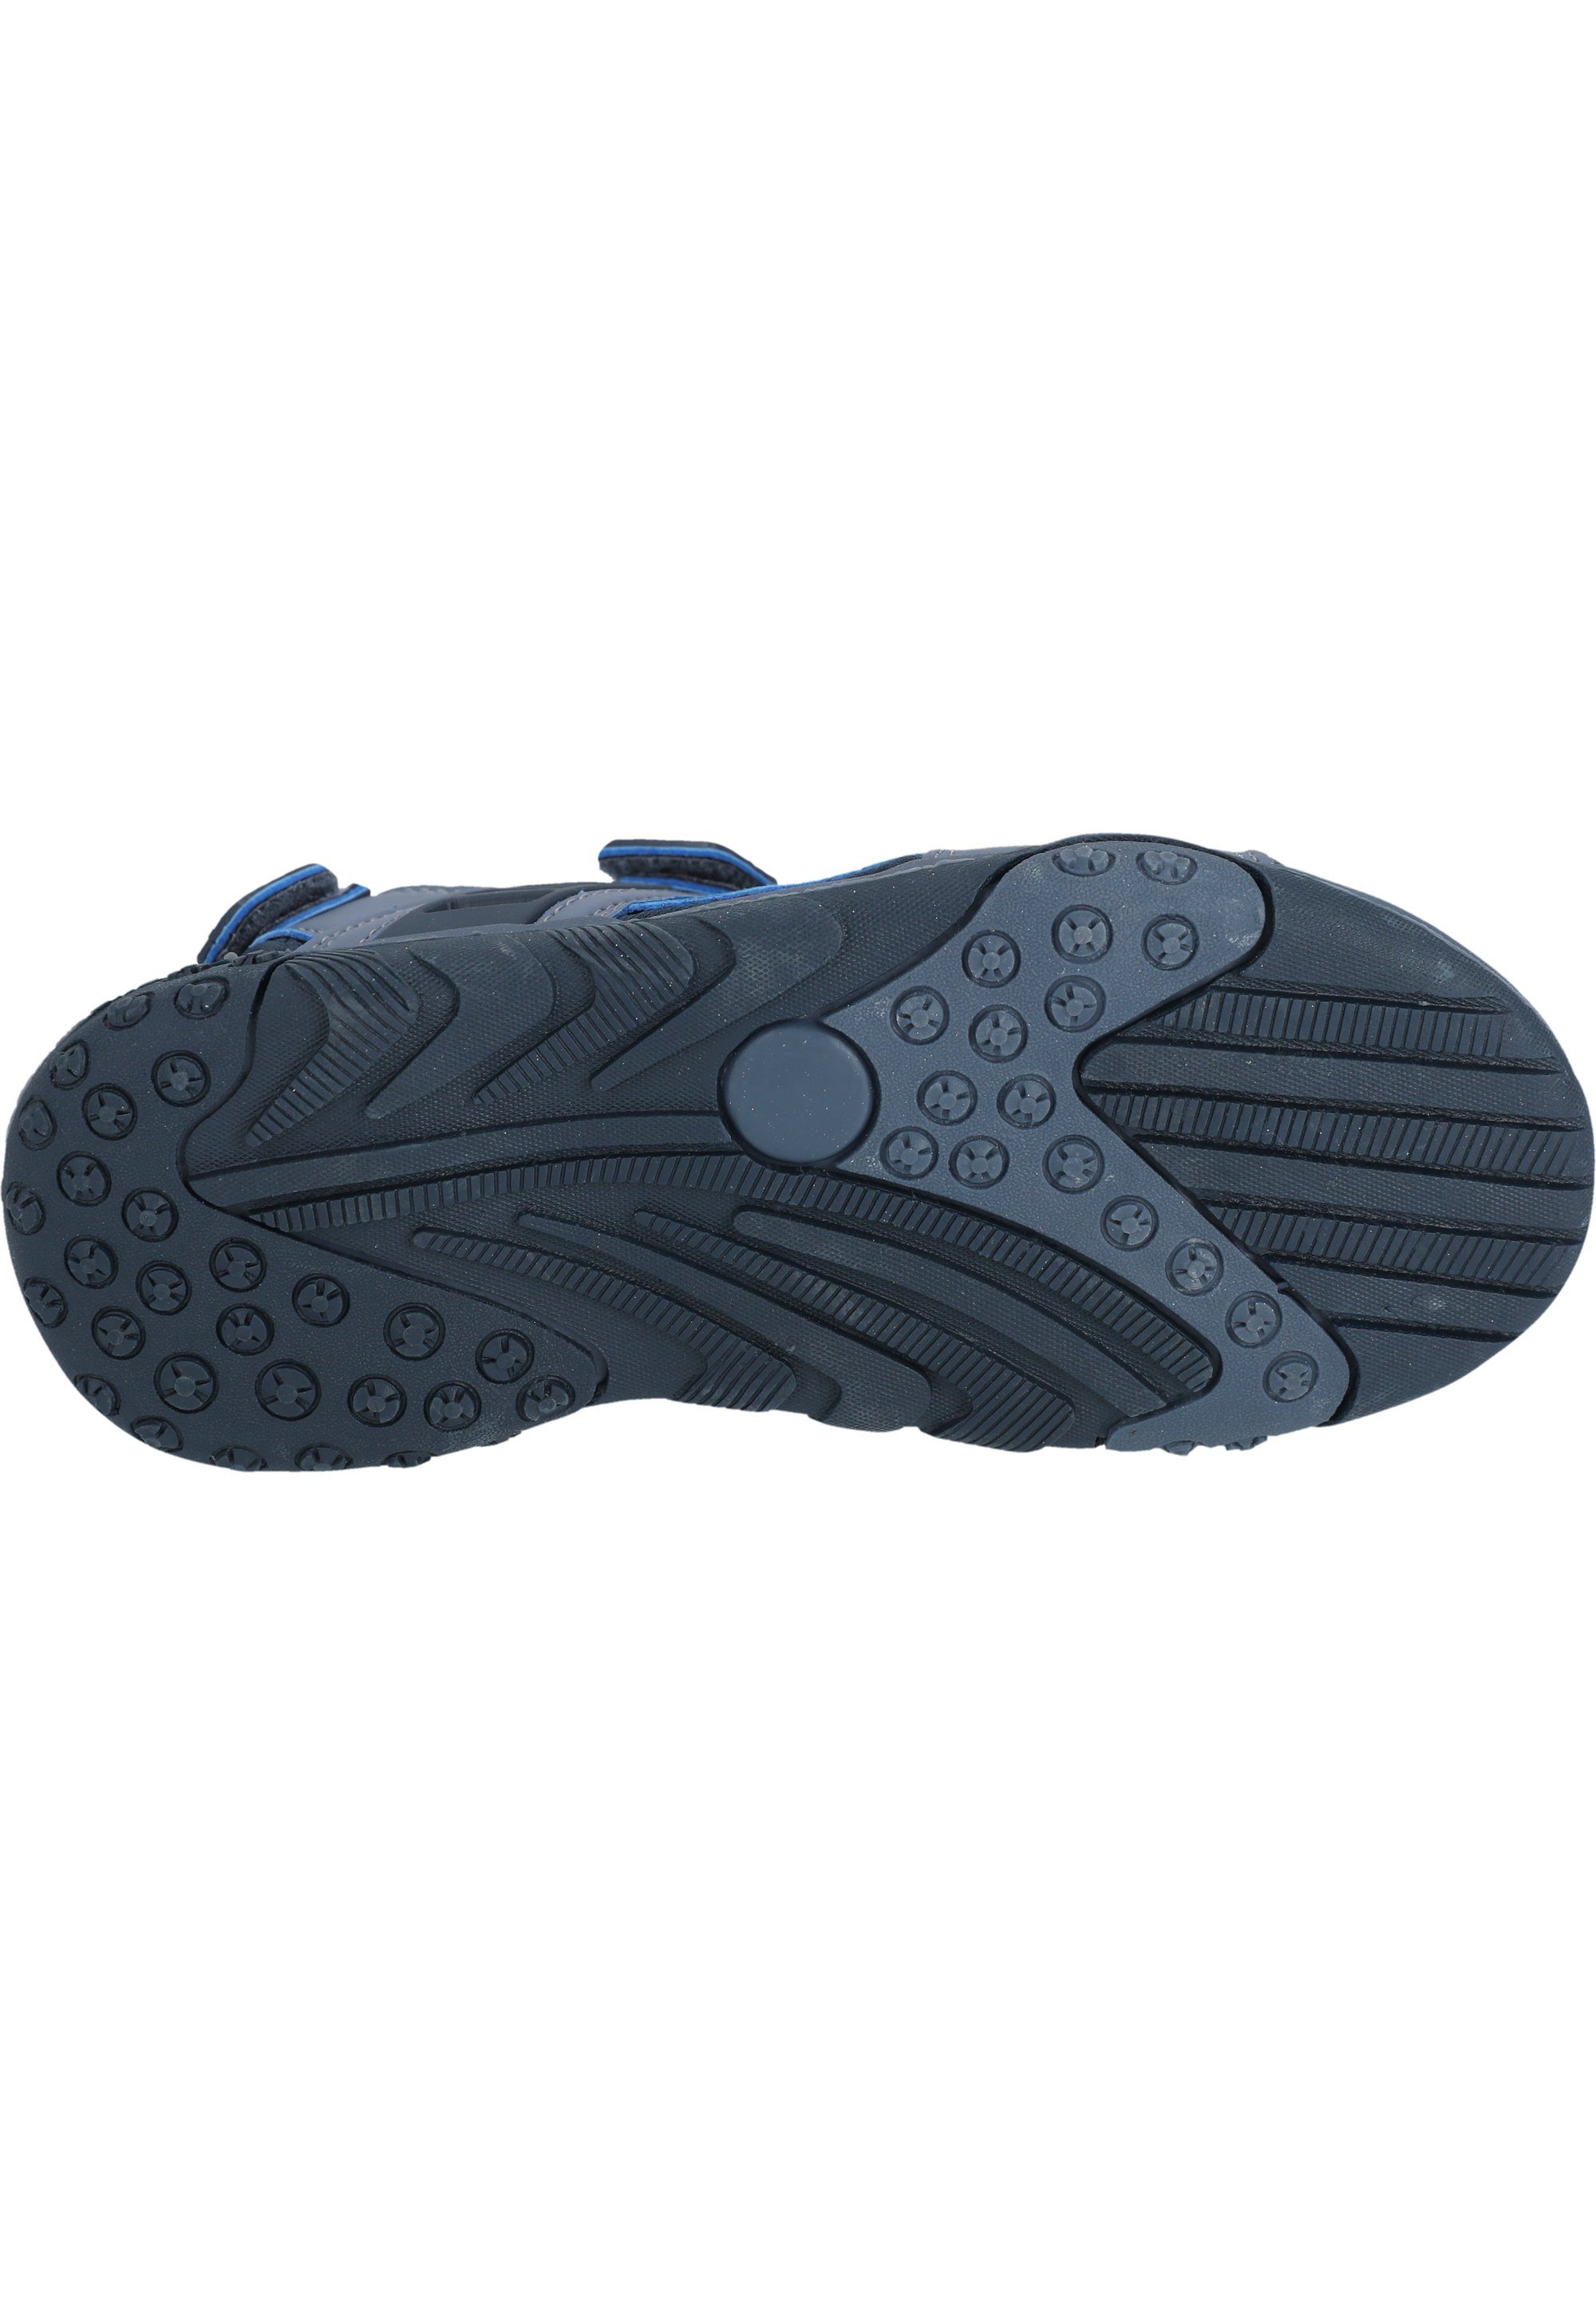 ZIGZAG Nung Sandale mit stoßdämpfender Eigenschaft blau